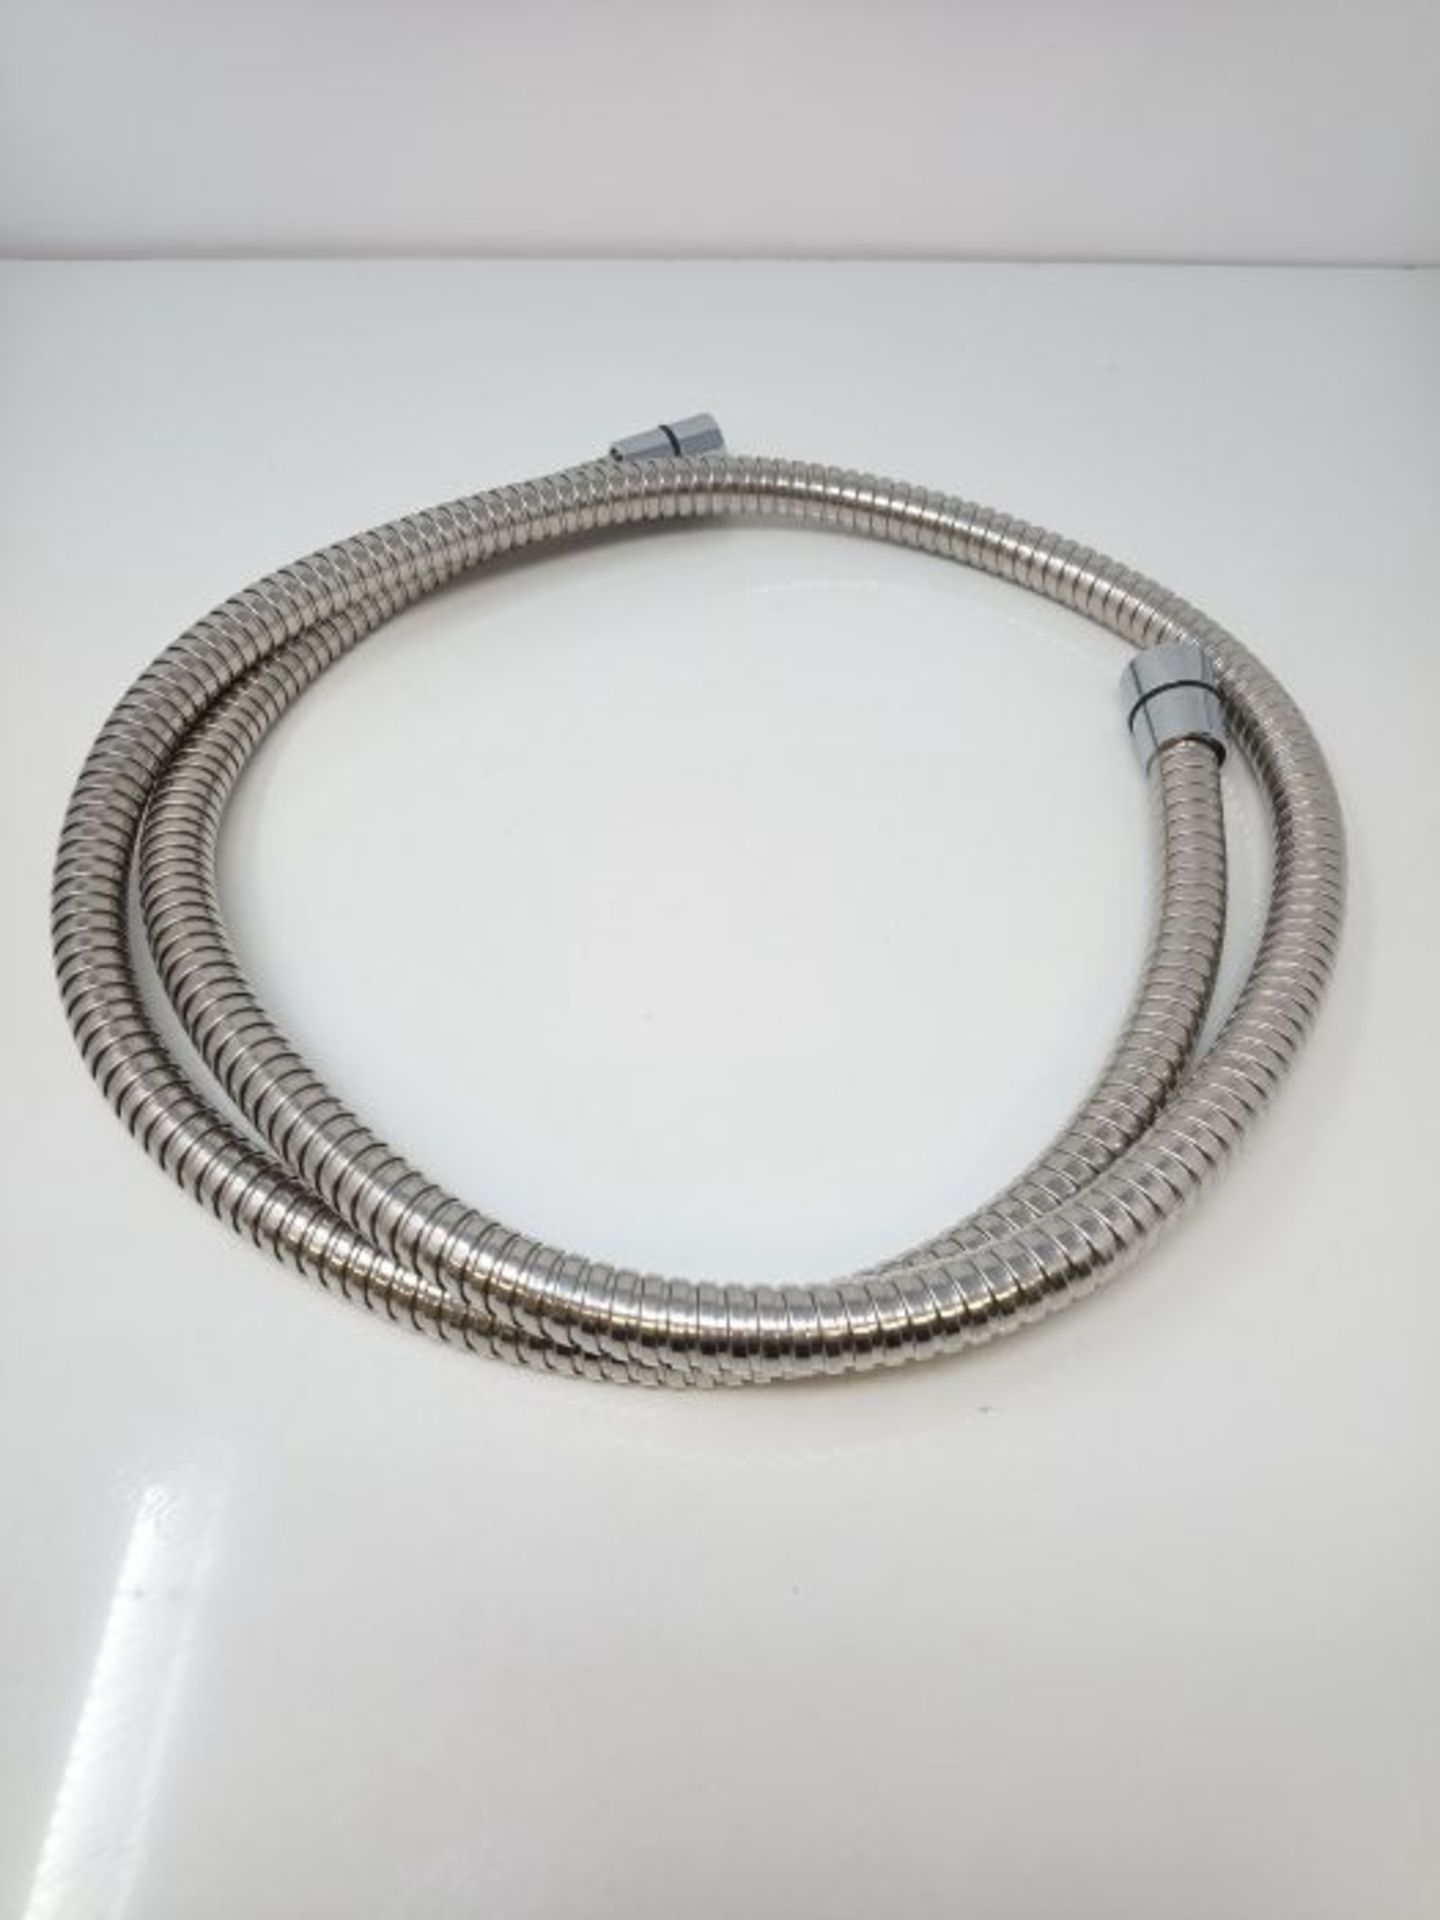 Stainless Steel flexible shower/bidet hose